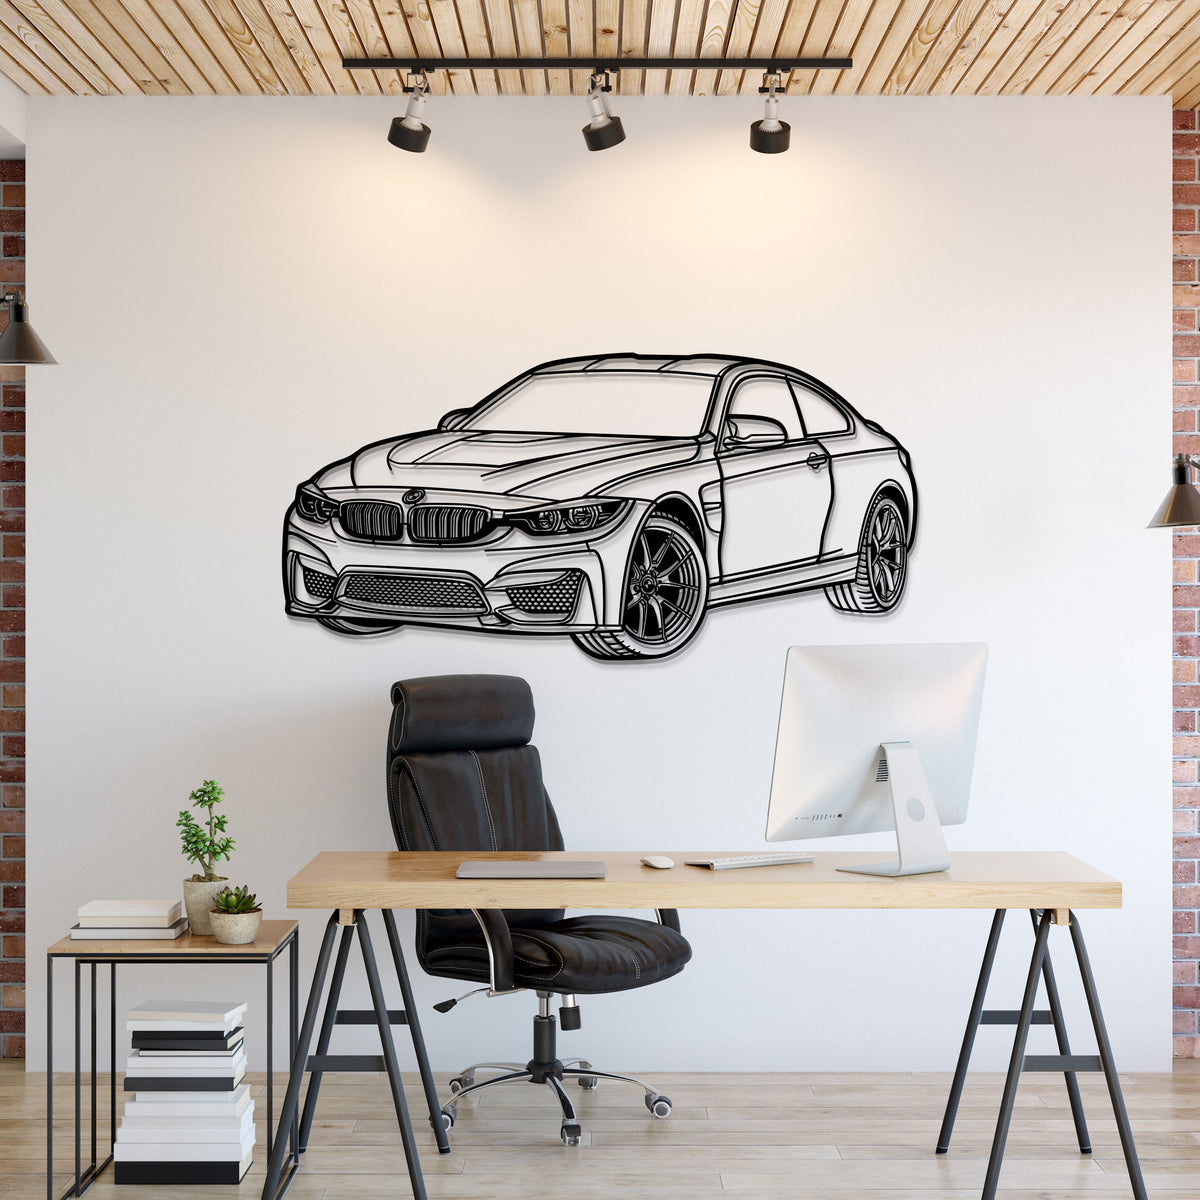 2014 F82 M4 Perspective Metal Car Wall Art - MT1143